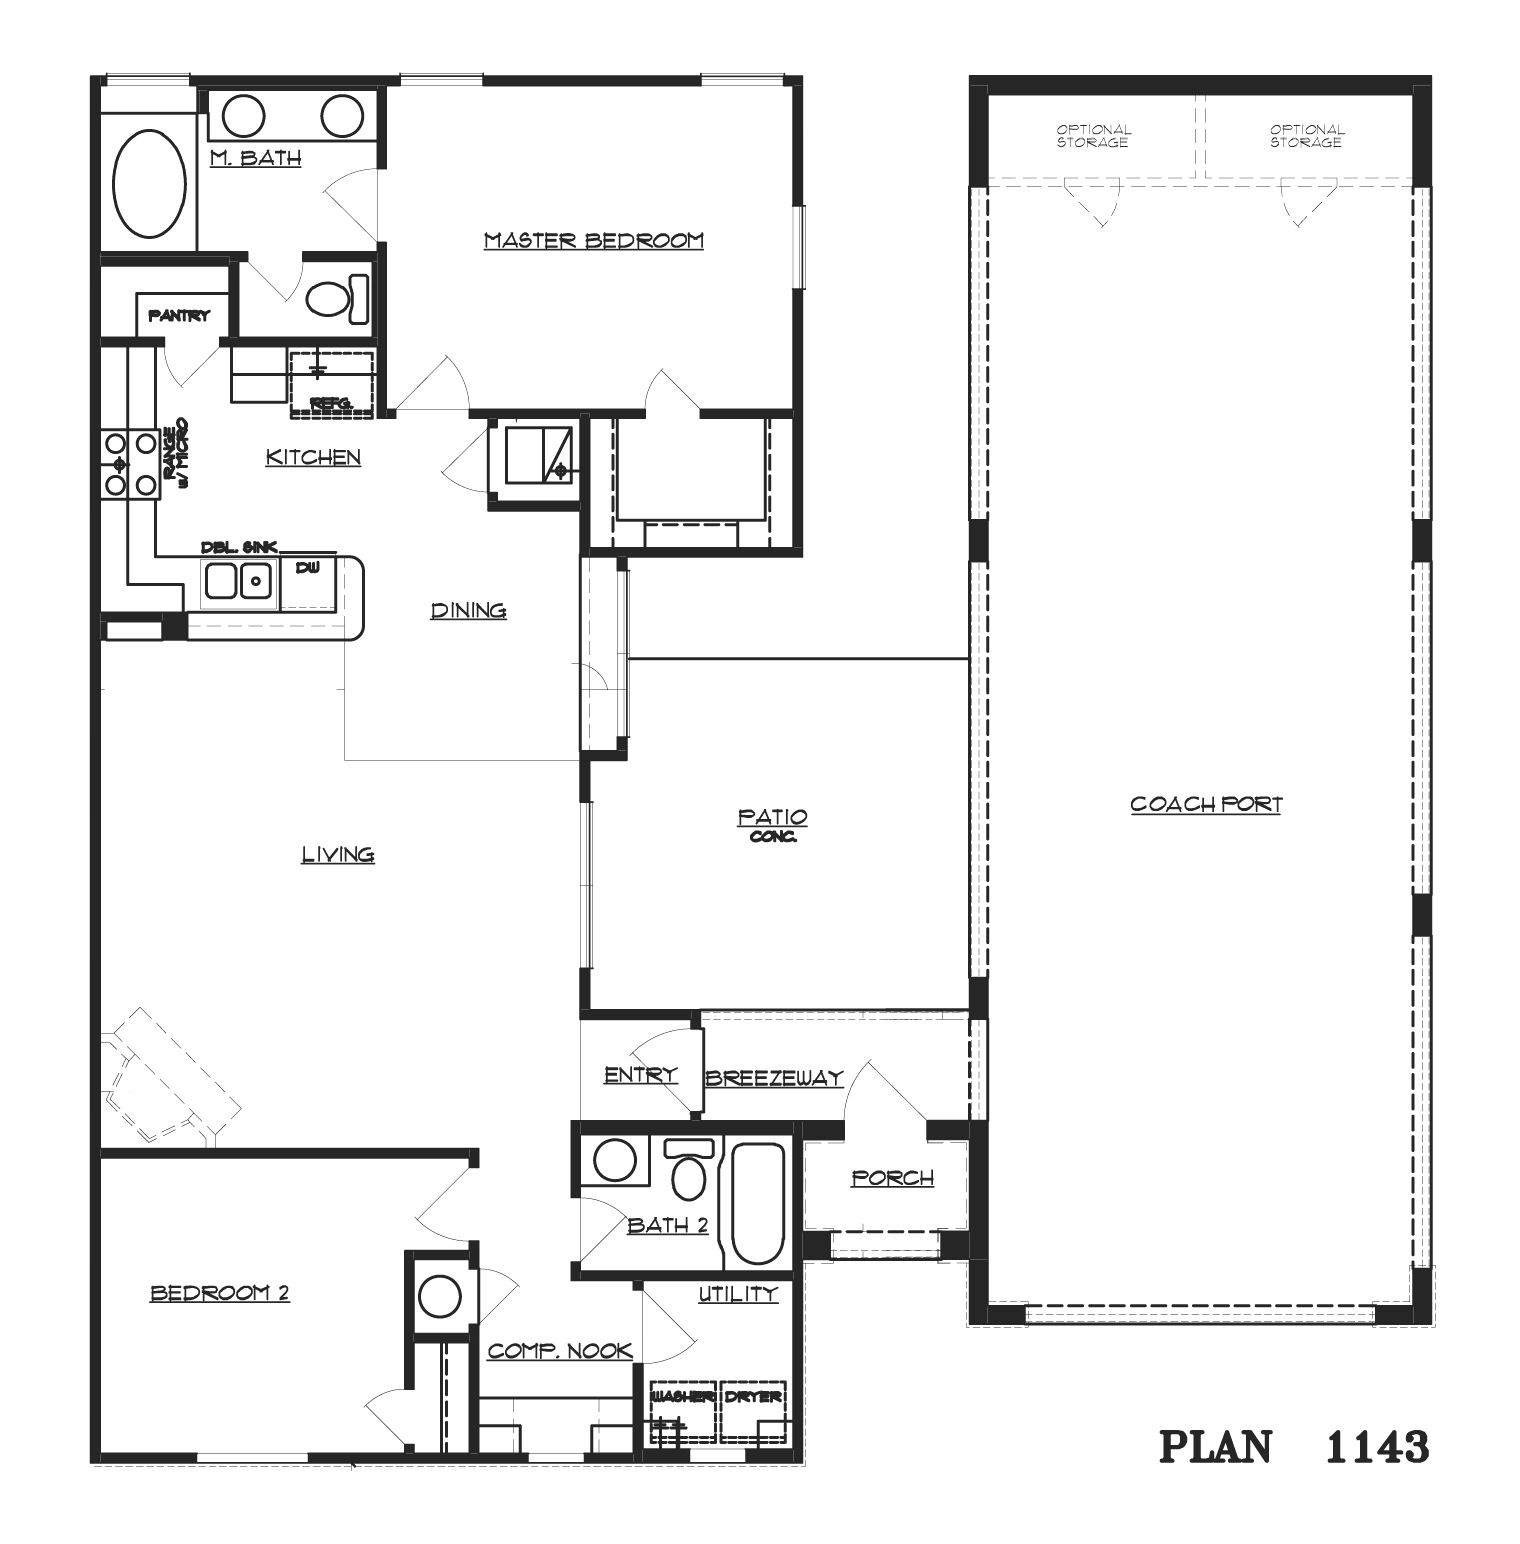 Barn for rv Barndominium floor plans, House floor plans